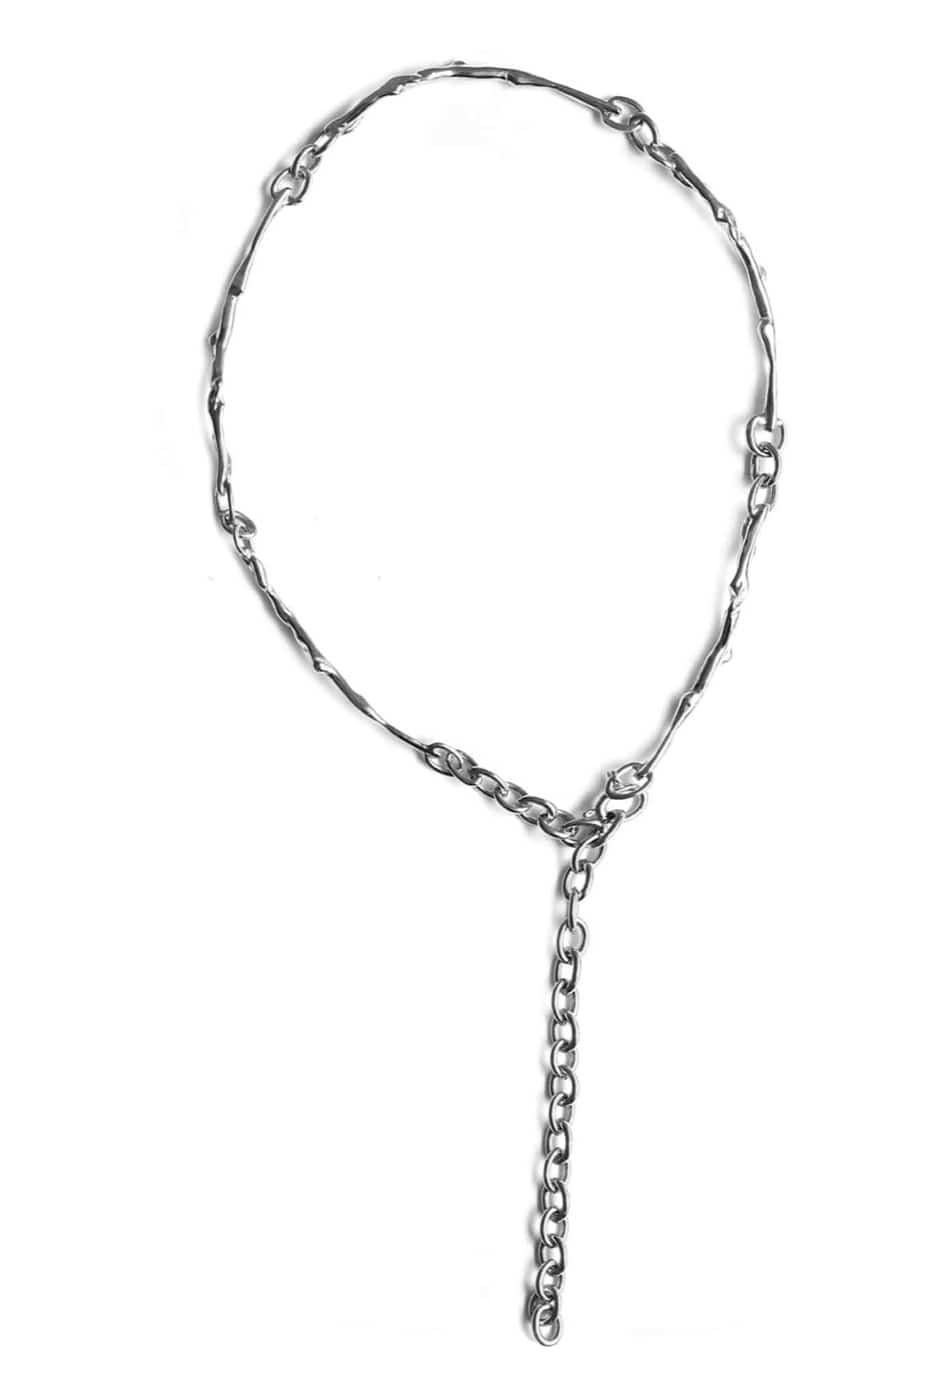 기본트렌드 Hustad HUSTAD 129 stems silver necklace_ 925 실버 줄기 네크리스  자체제작 국내 